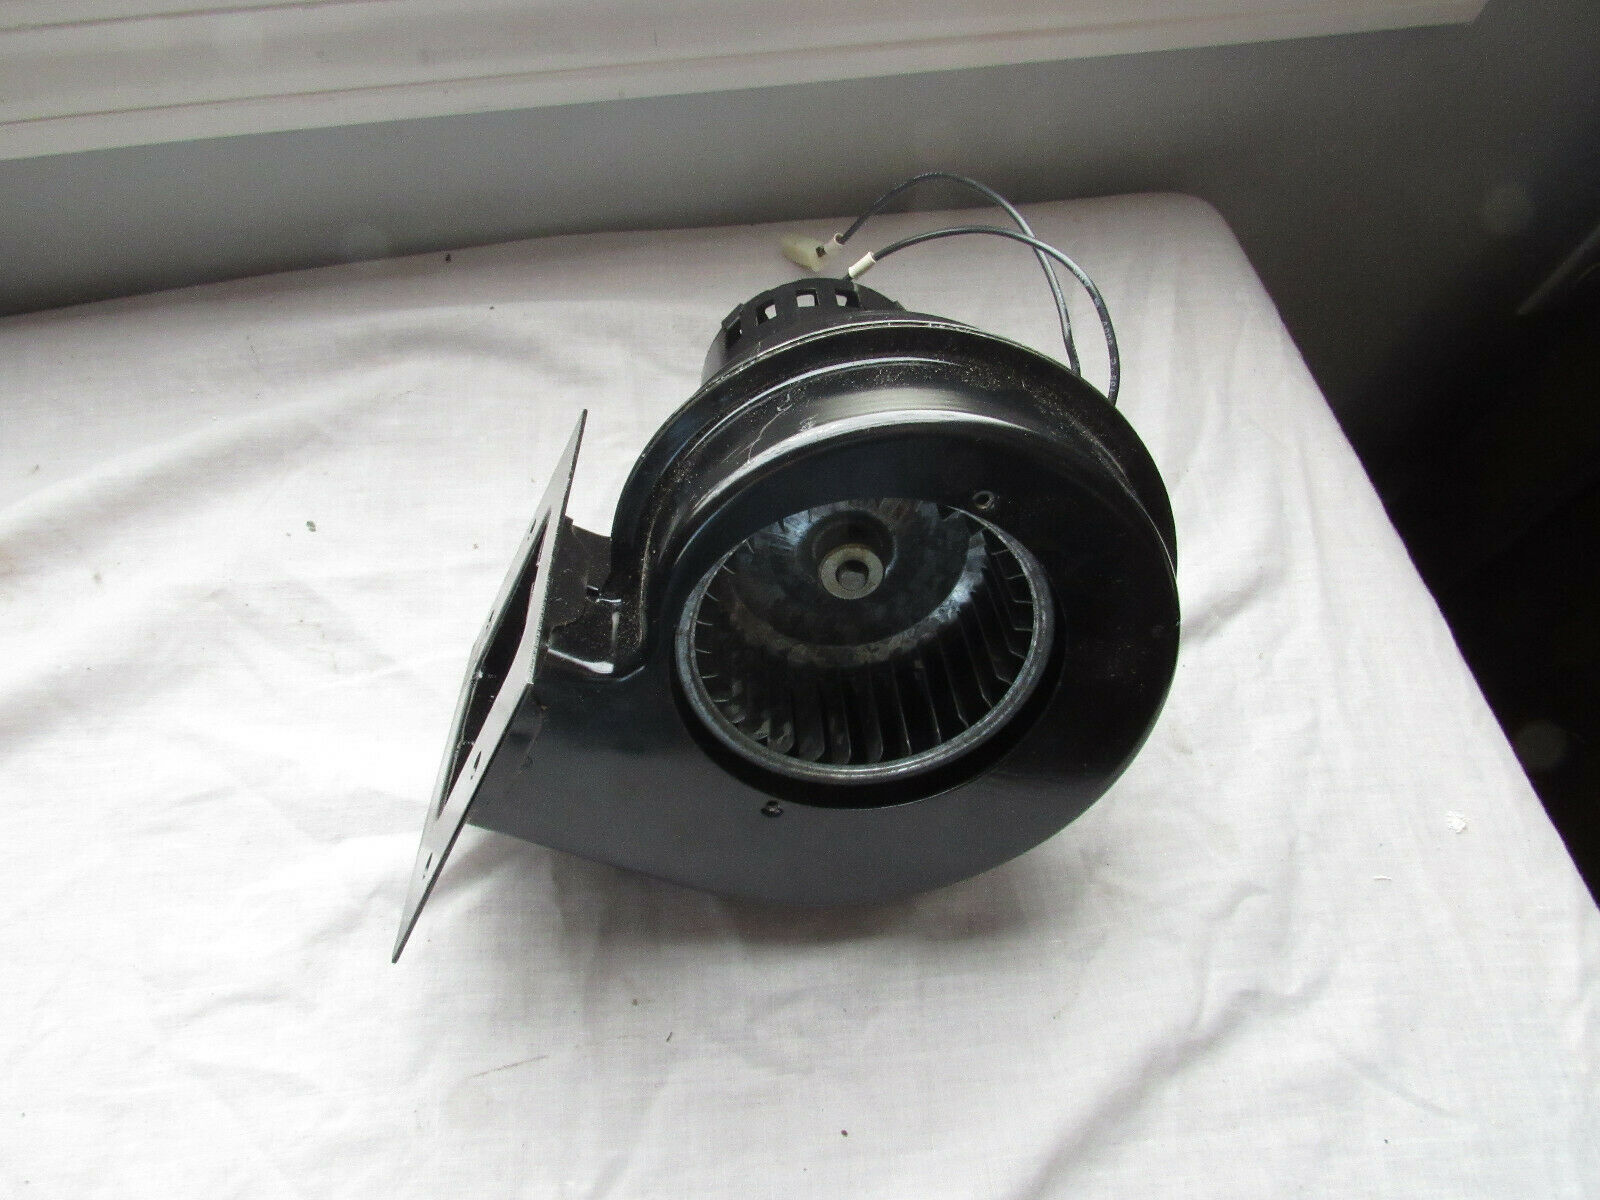 Fasco Motor Fan Blower Type 21 7021-0573 1/75 Hp 3100 Rpm 115 Volts Draft Heater